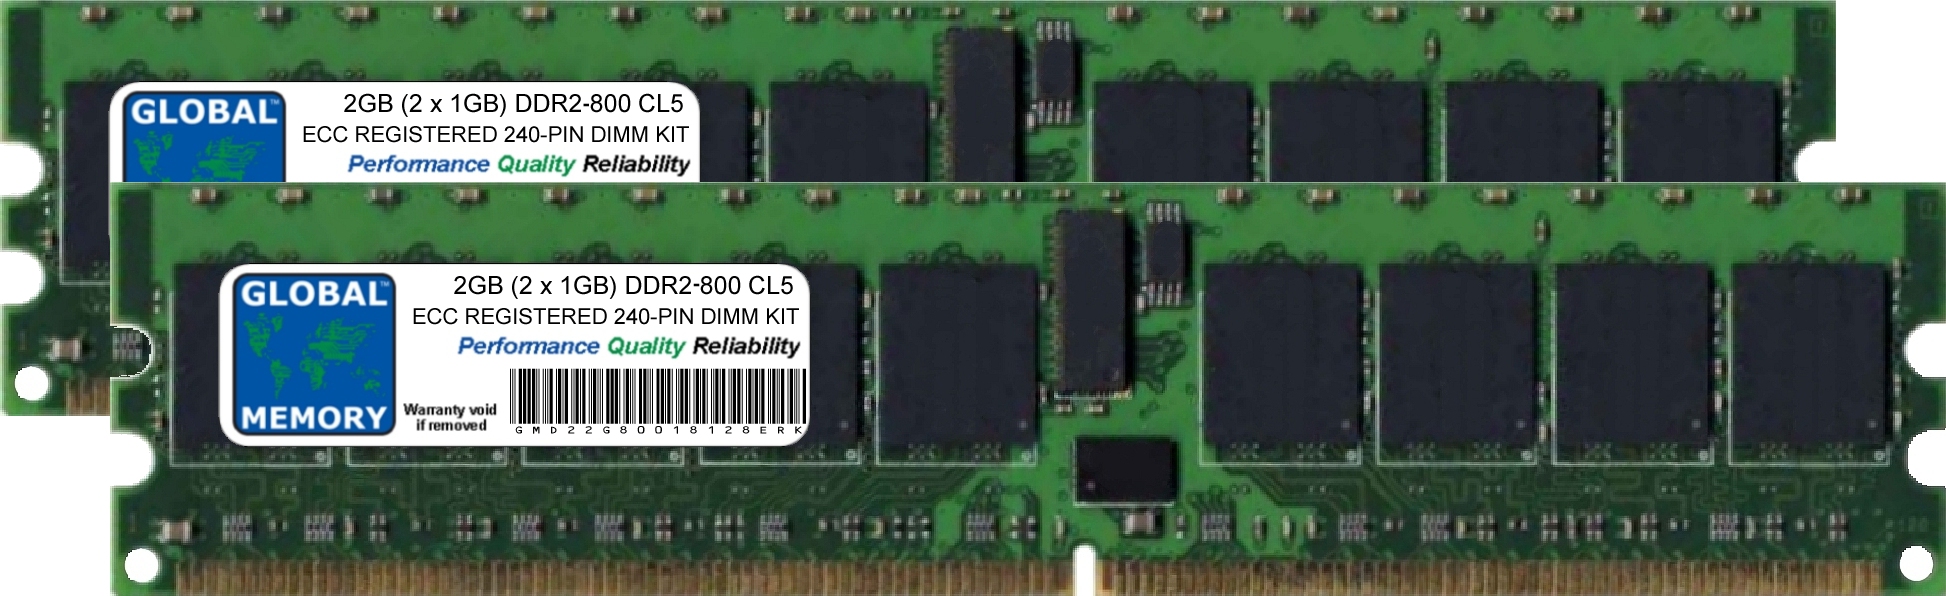 2GB (2 x 1GB) DDR2 800MHz PC2-6400 240-PIN ECC REGISTERED DIMM (RDIMM) MEMORY RAM KIT FOR HEWLETT-PACKARD SERVERS/WORKSTATIONS (2 RANK KIT CHIPKILL)